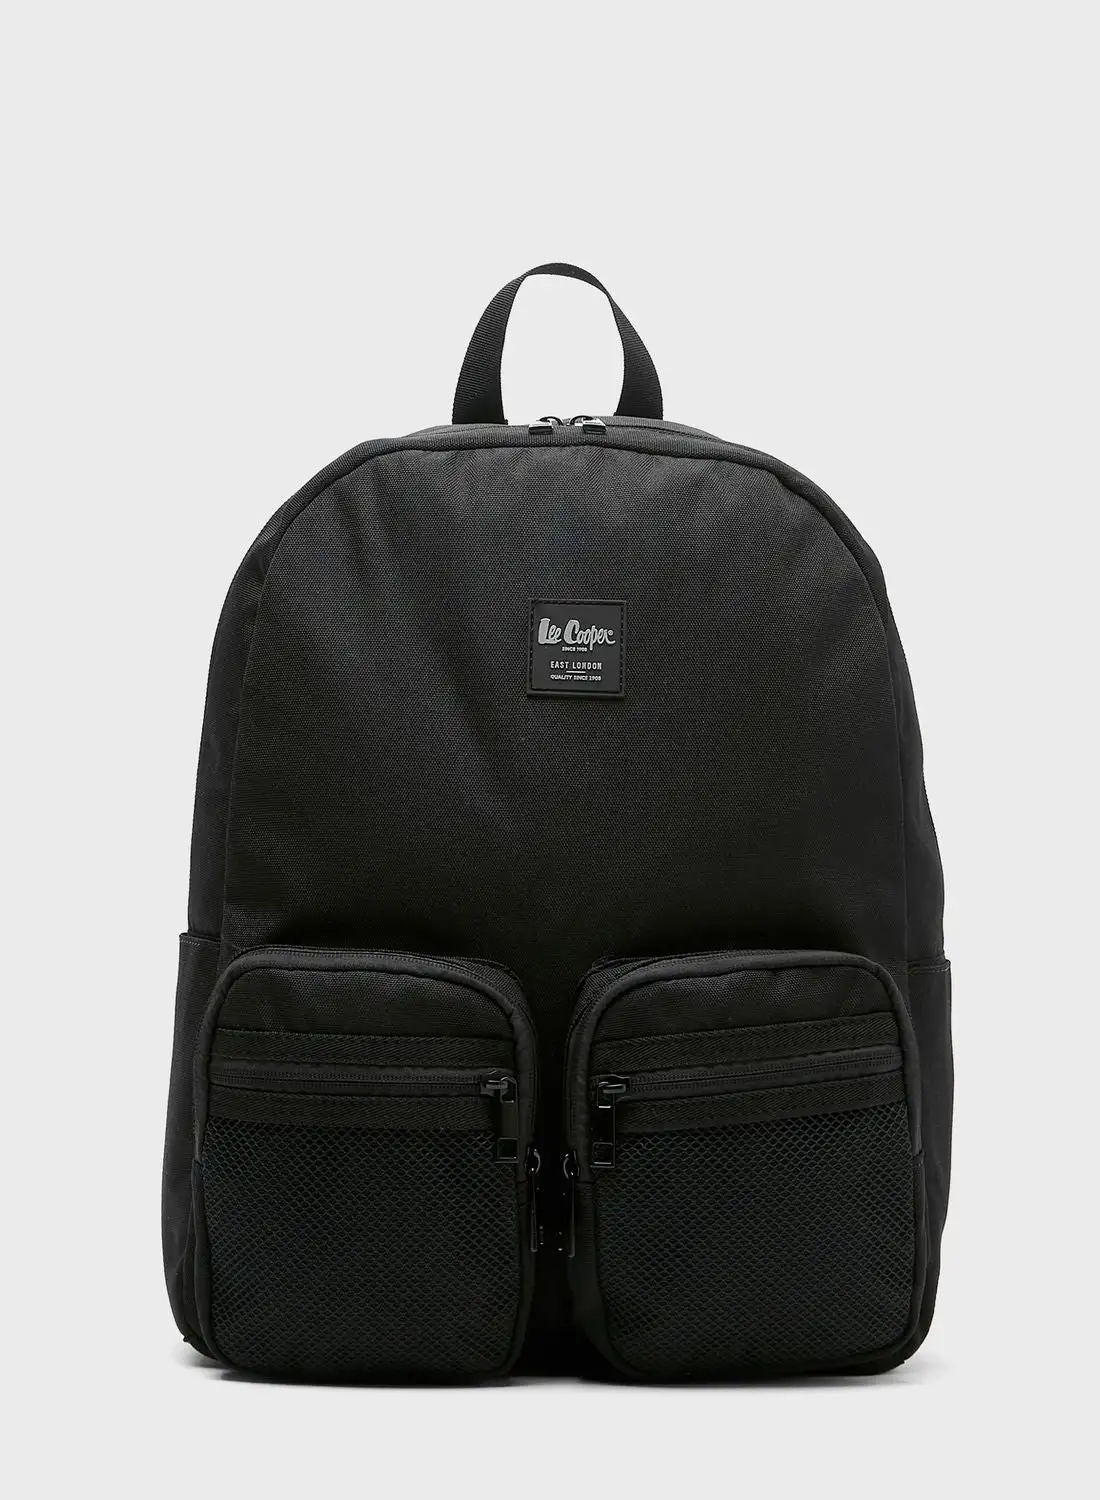 Lee Cooper Dual Pocket Backpack